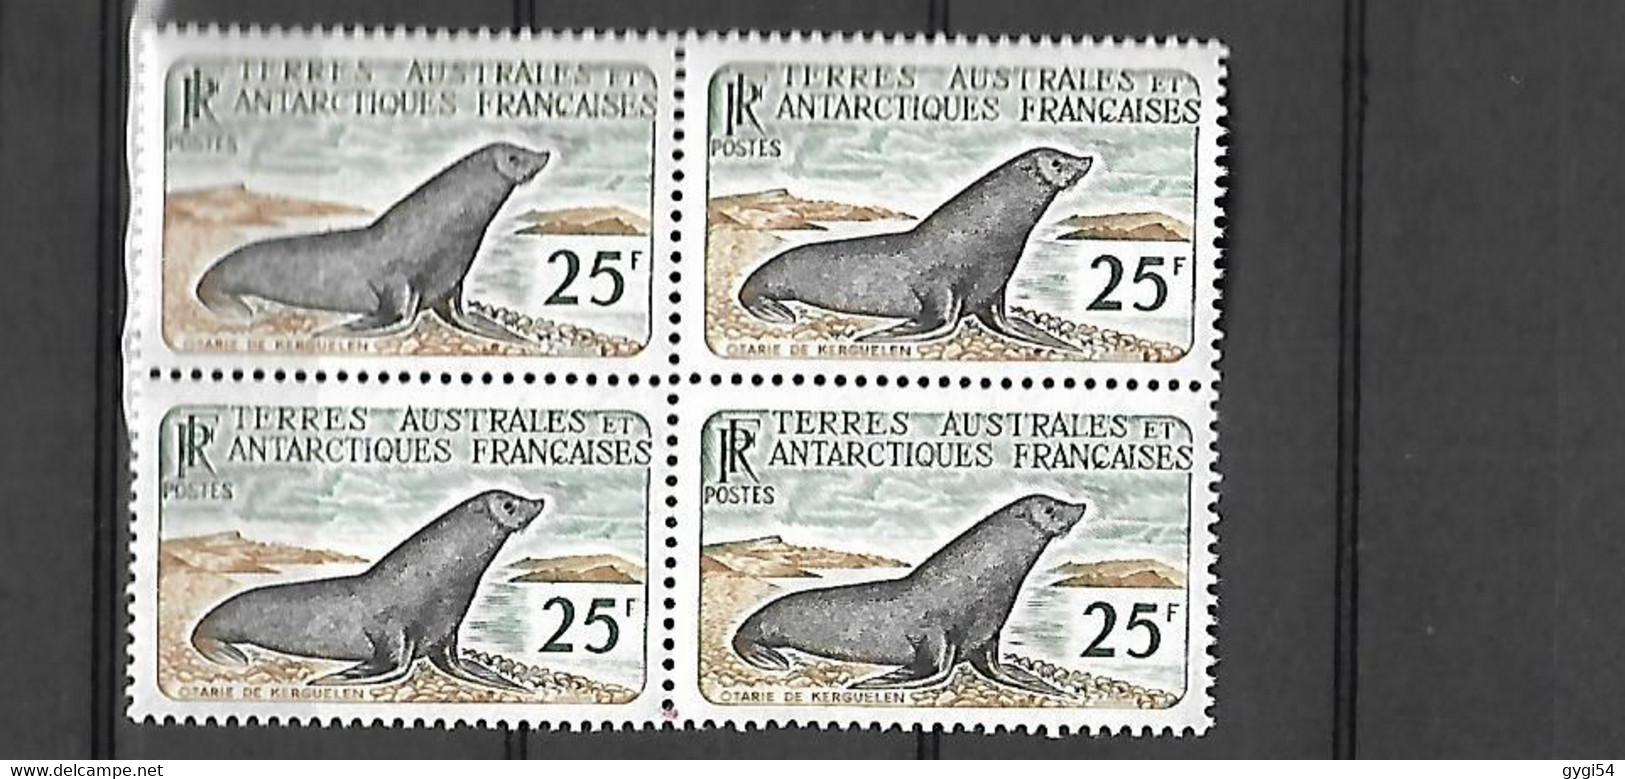 TAAF  1959   Poste   Cat Yt N°  16 X   4   N** MNH - Unused Stamps